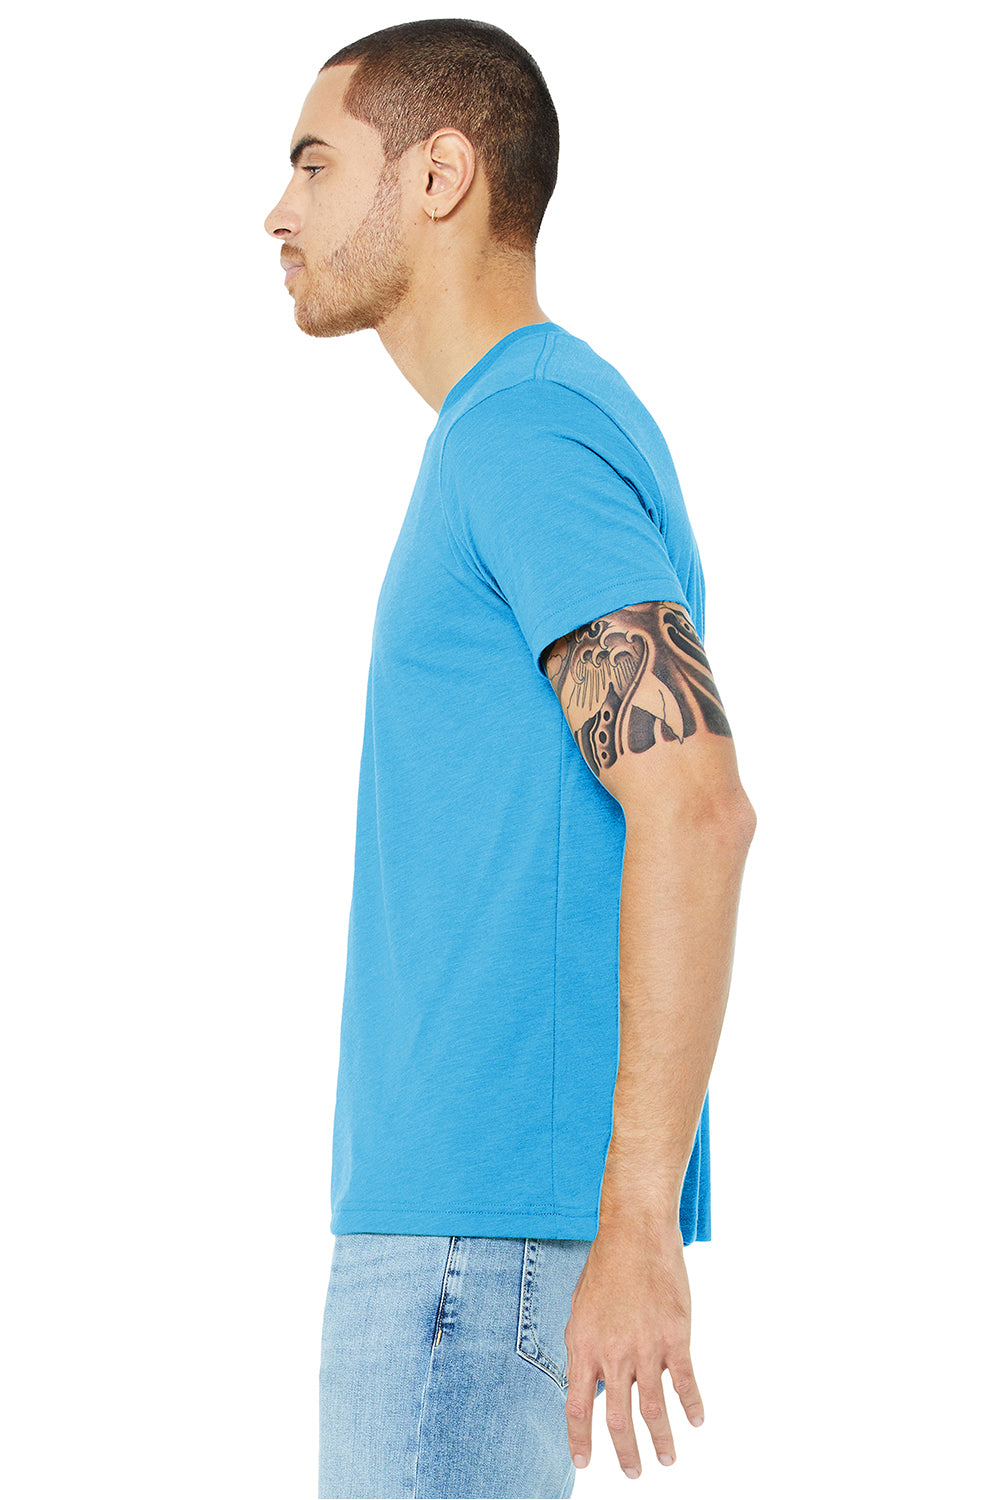 Bella + Canvas BC3413/3413C/3413 Mens Short Sleeve Crewneck T-Shirt Aqua Blue Model Side